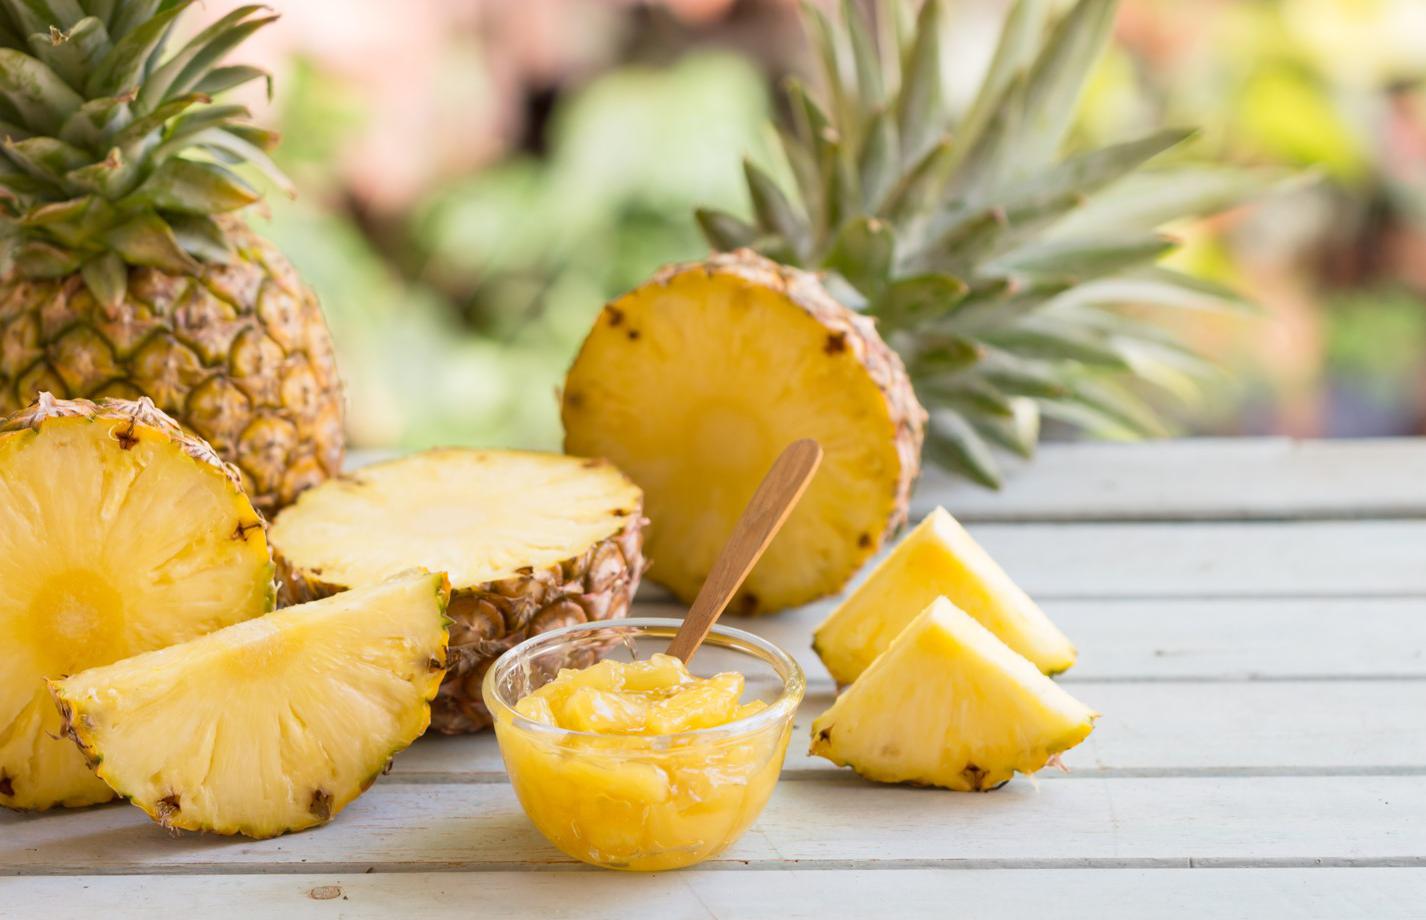 Benefits of pineapple: 5 properties